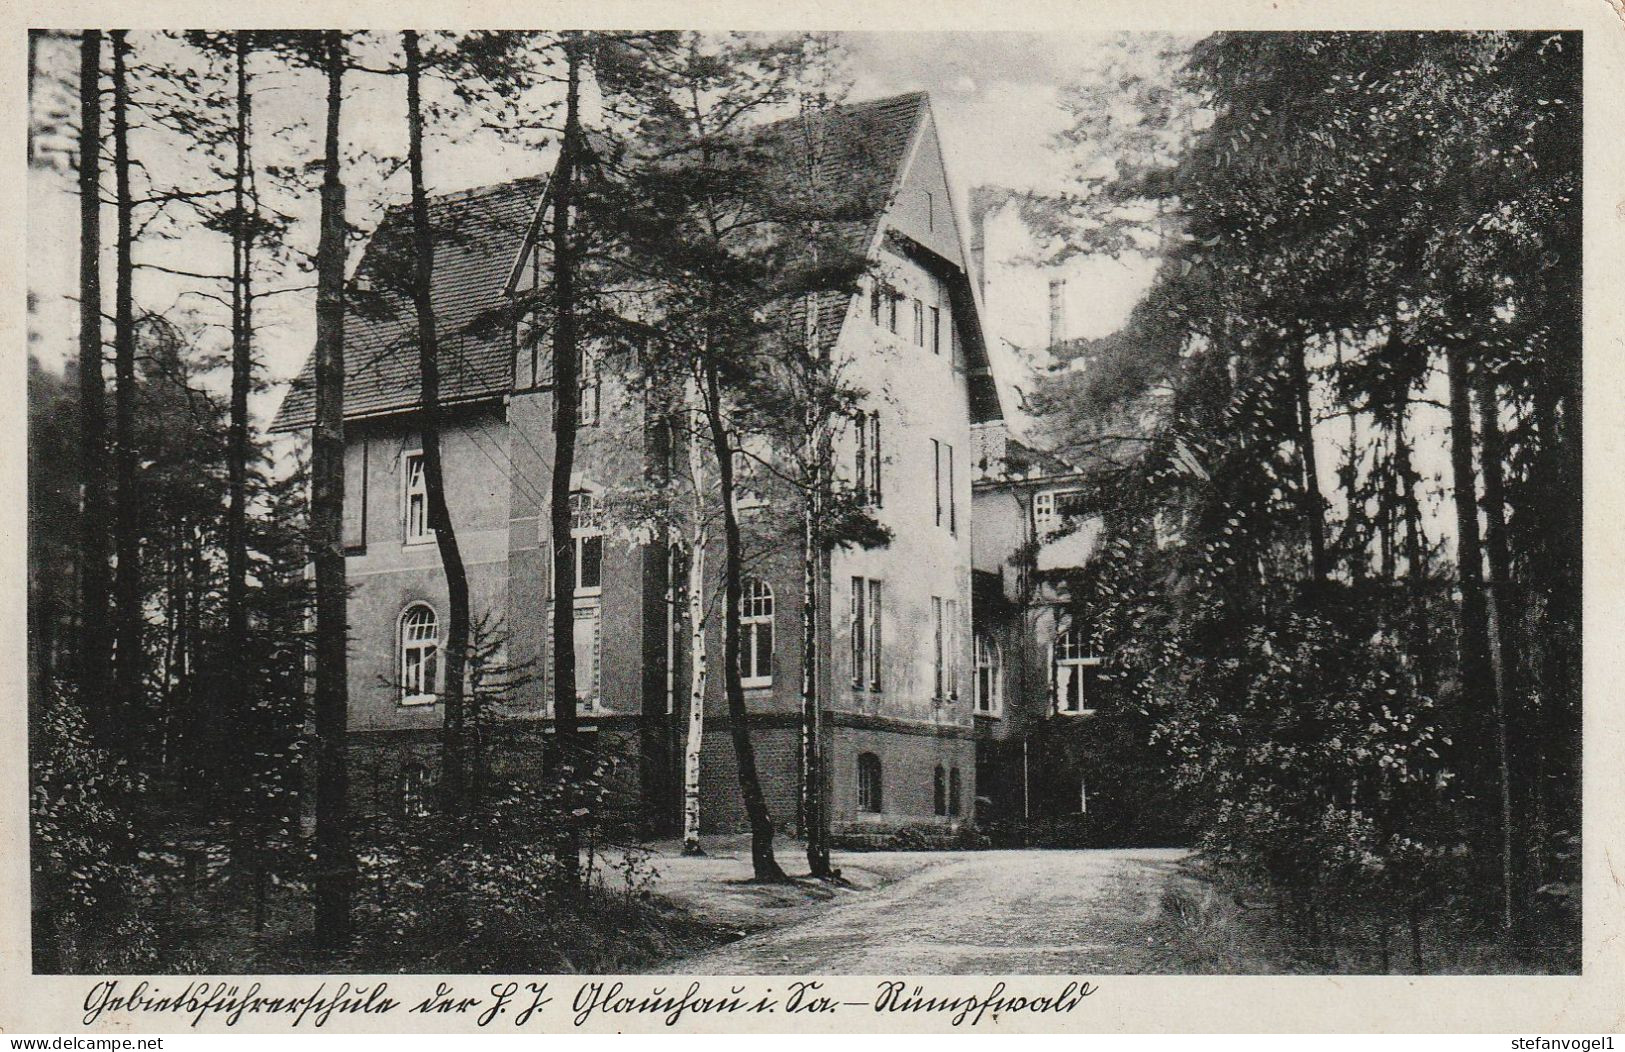 Glauchau   Gebietsführerschule HJ   Gel. 1937 - Glauchau